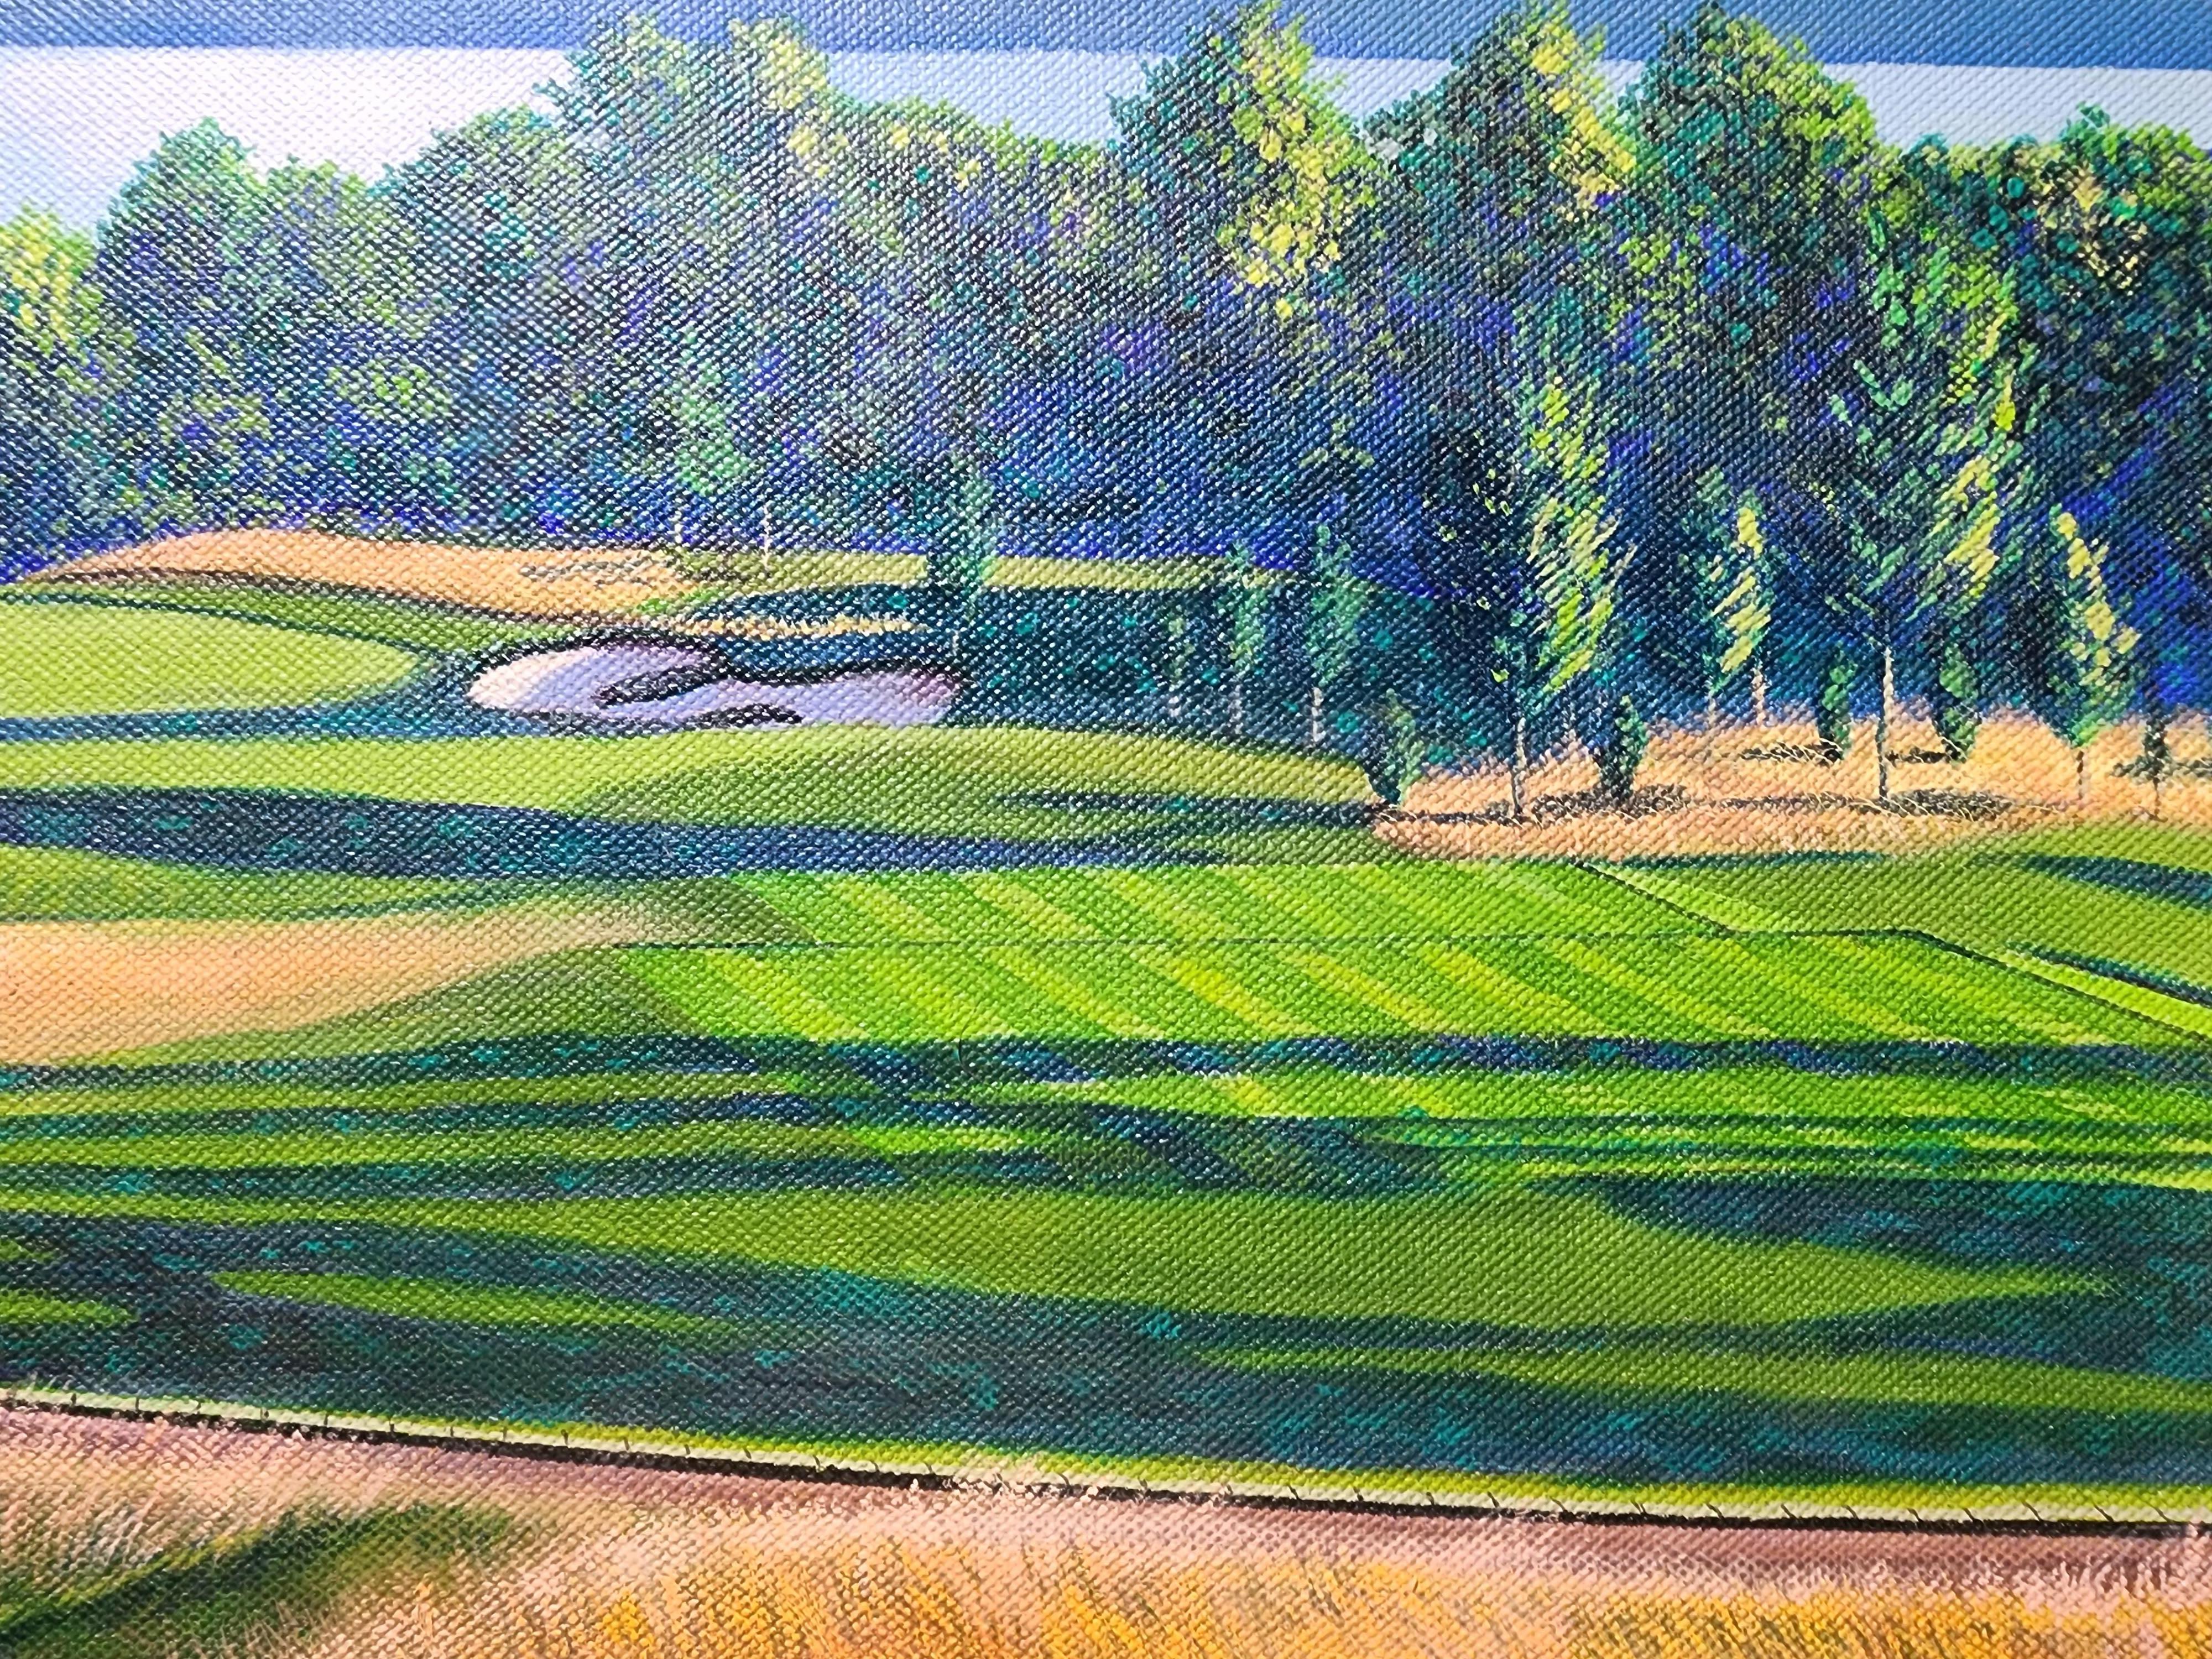 #16 Croton on Hudson County Club.
Wunderschön gezeichnete Golfansicht von Illustrator Donald Moss.
Er ist bekannt für seine Golfansichten, von denen viele als lithografische Offsetdrucke hergestellt wurden.
Ihre Chance, ein Original zu besitzen!